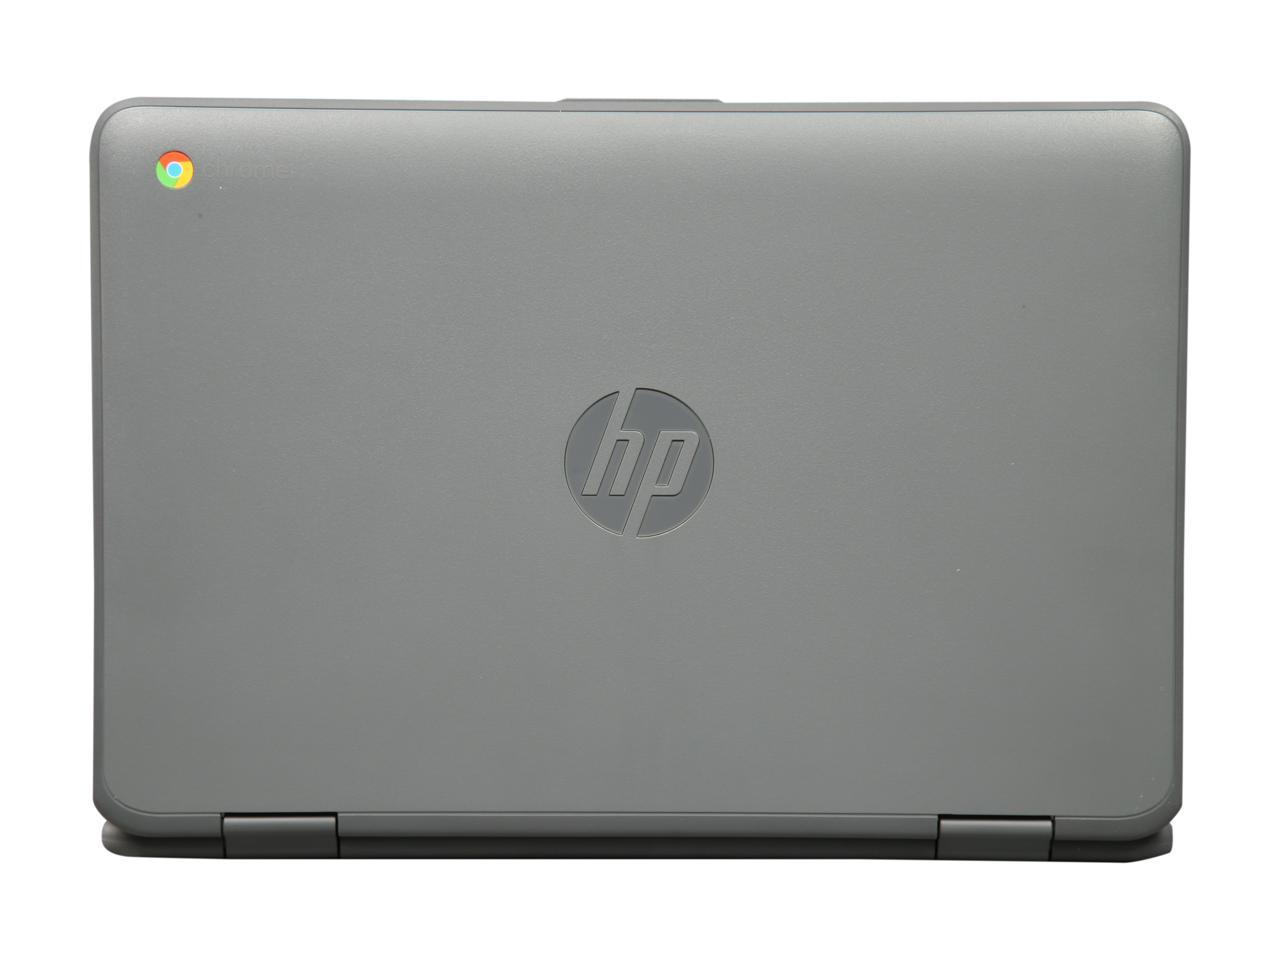 HP x360 EE G2 11-ae027nr 11.6" HD 2 in 1 Chromebook, Intel Celeron N3350, 4GB, 16GB, Chrome OS, 2MW51UAT